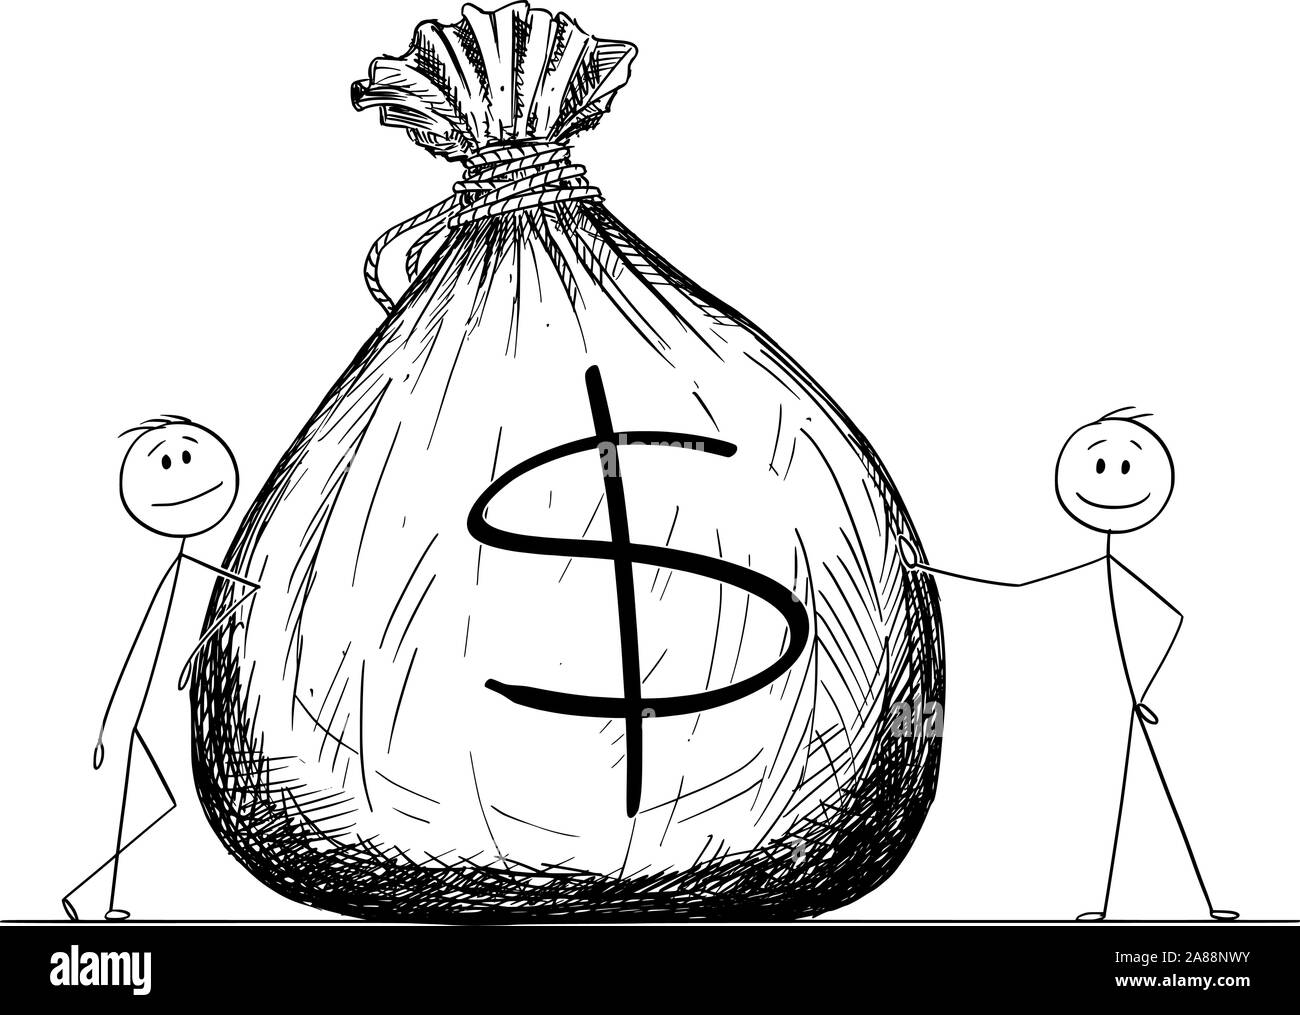 Vector cartoon stick figure dessin illustration conceptuelle de deux hommes d'affaires ou posant avec un gros sac ou sac de transport de l'argent avec le symbole du dollar. Illustration de Vecteur